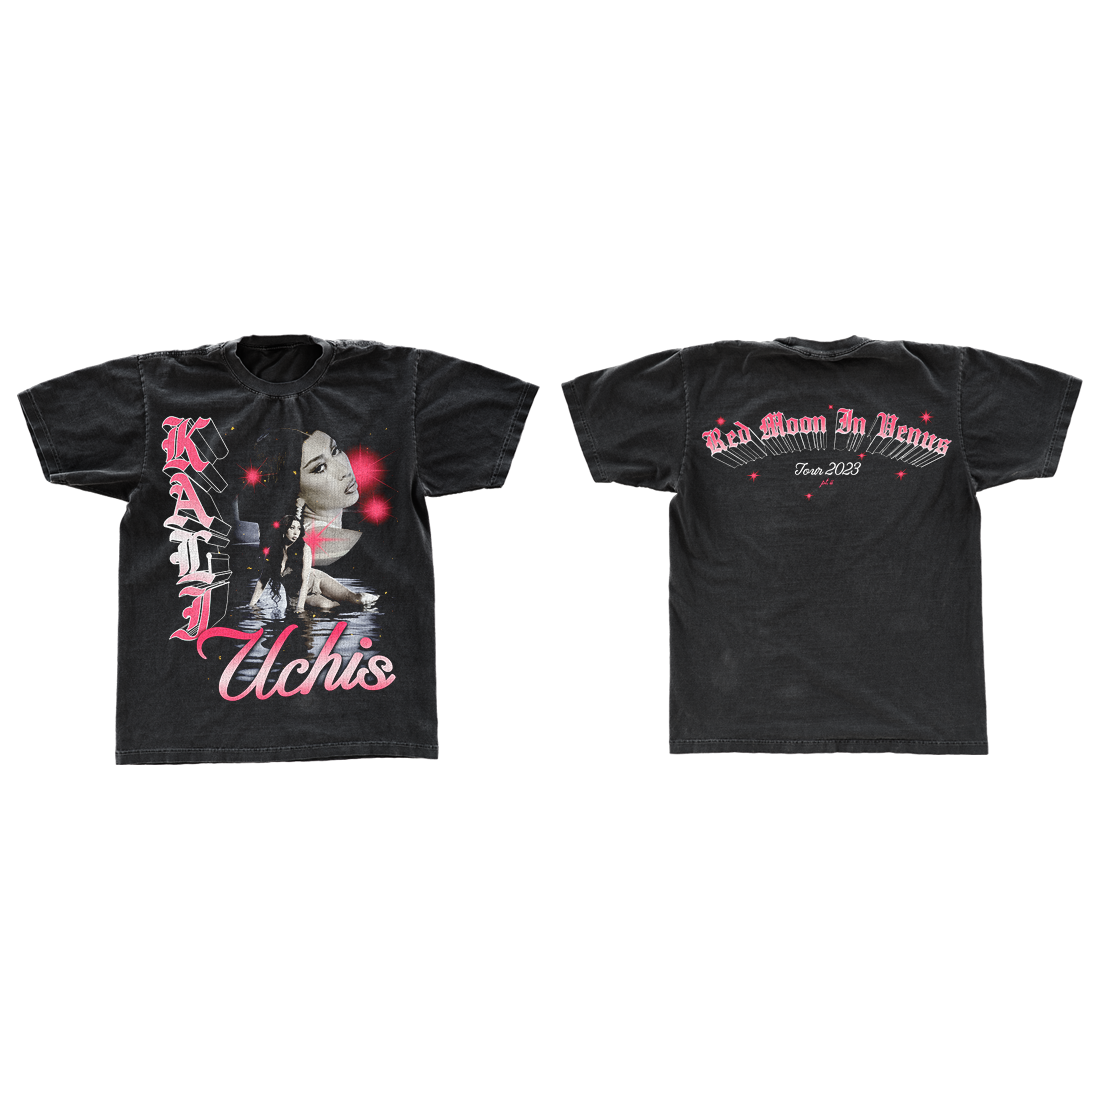 RVIM Tour Black & Pink Tour T-Shirt